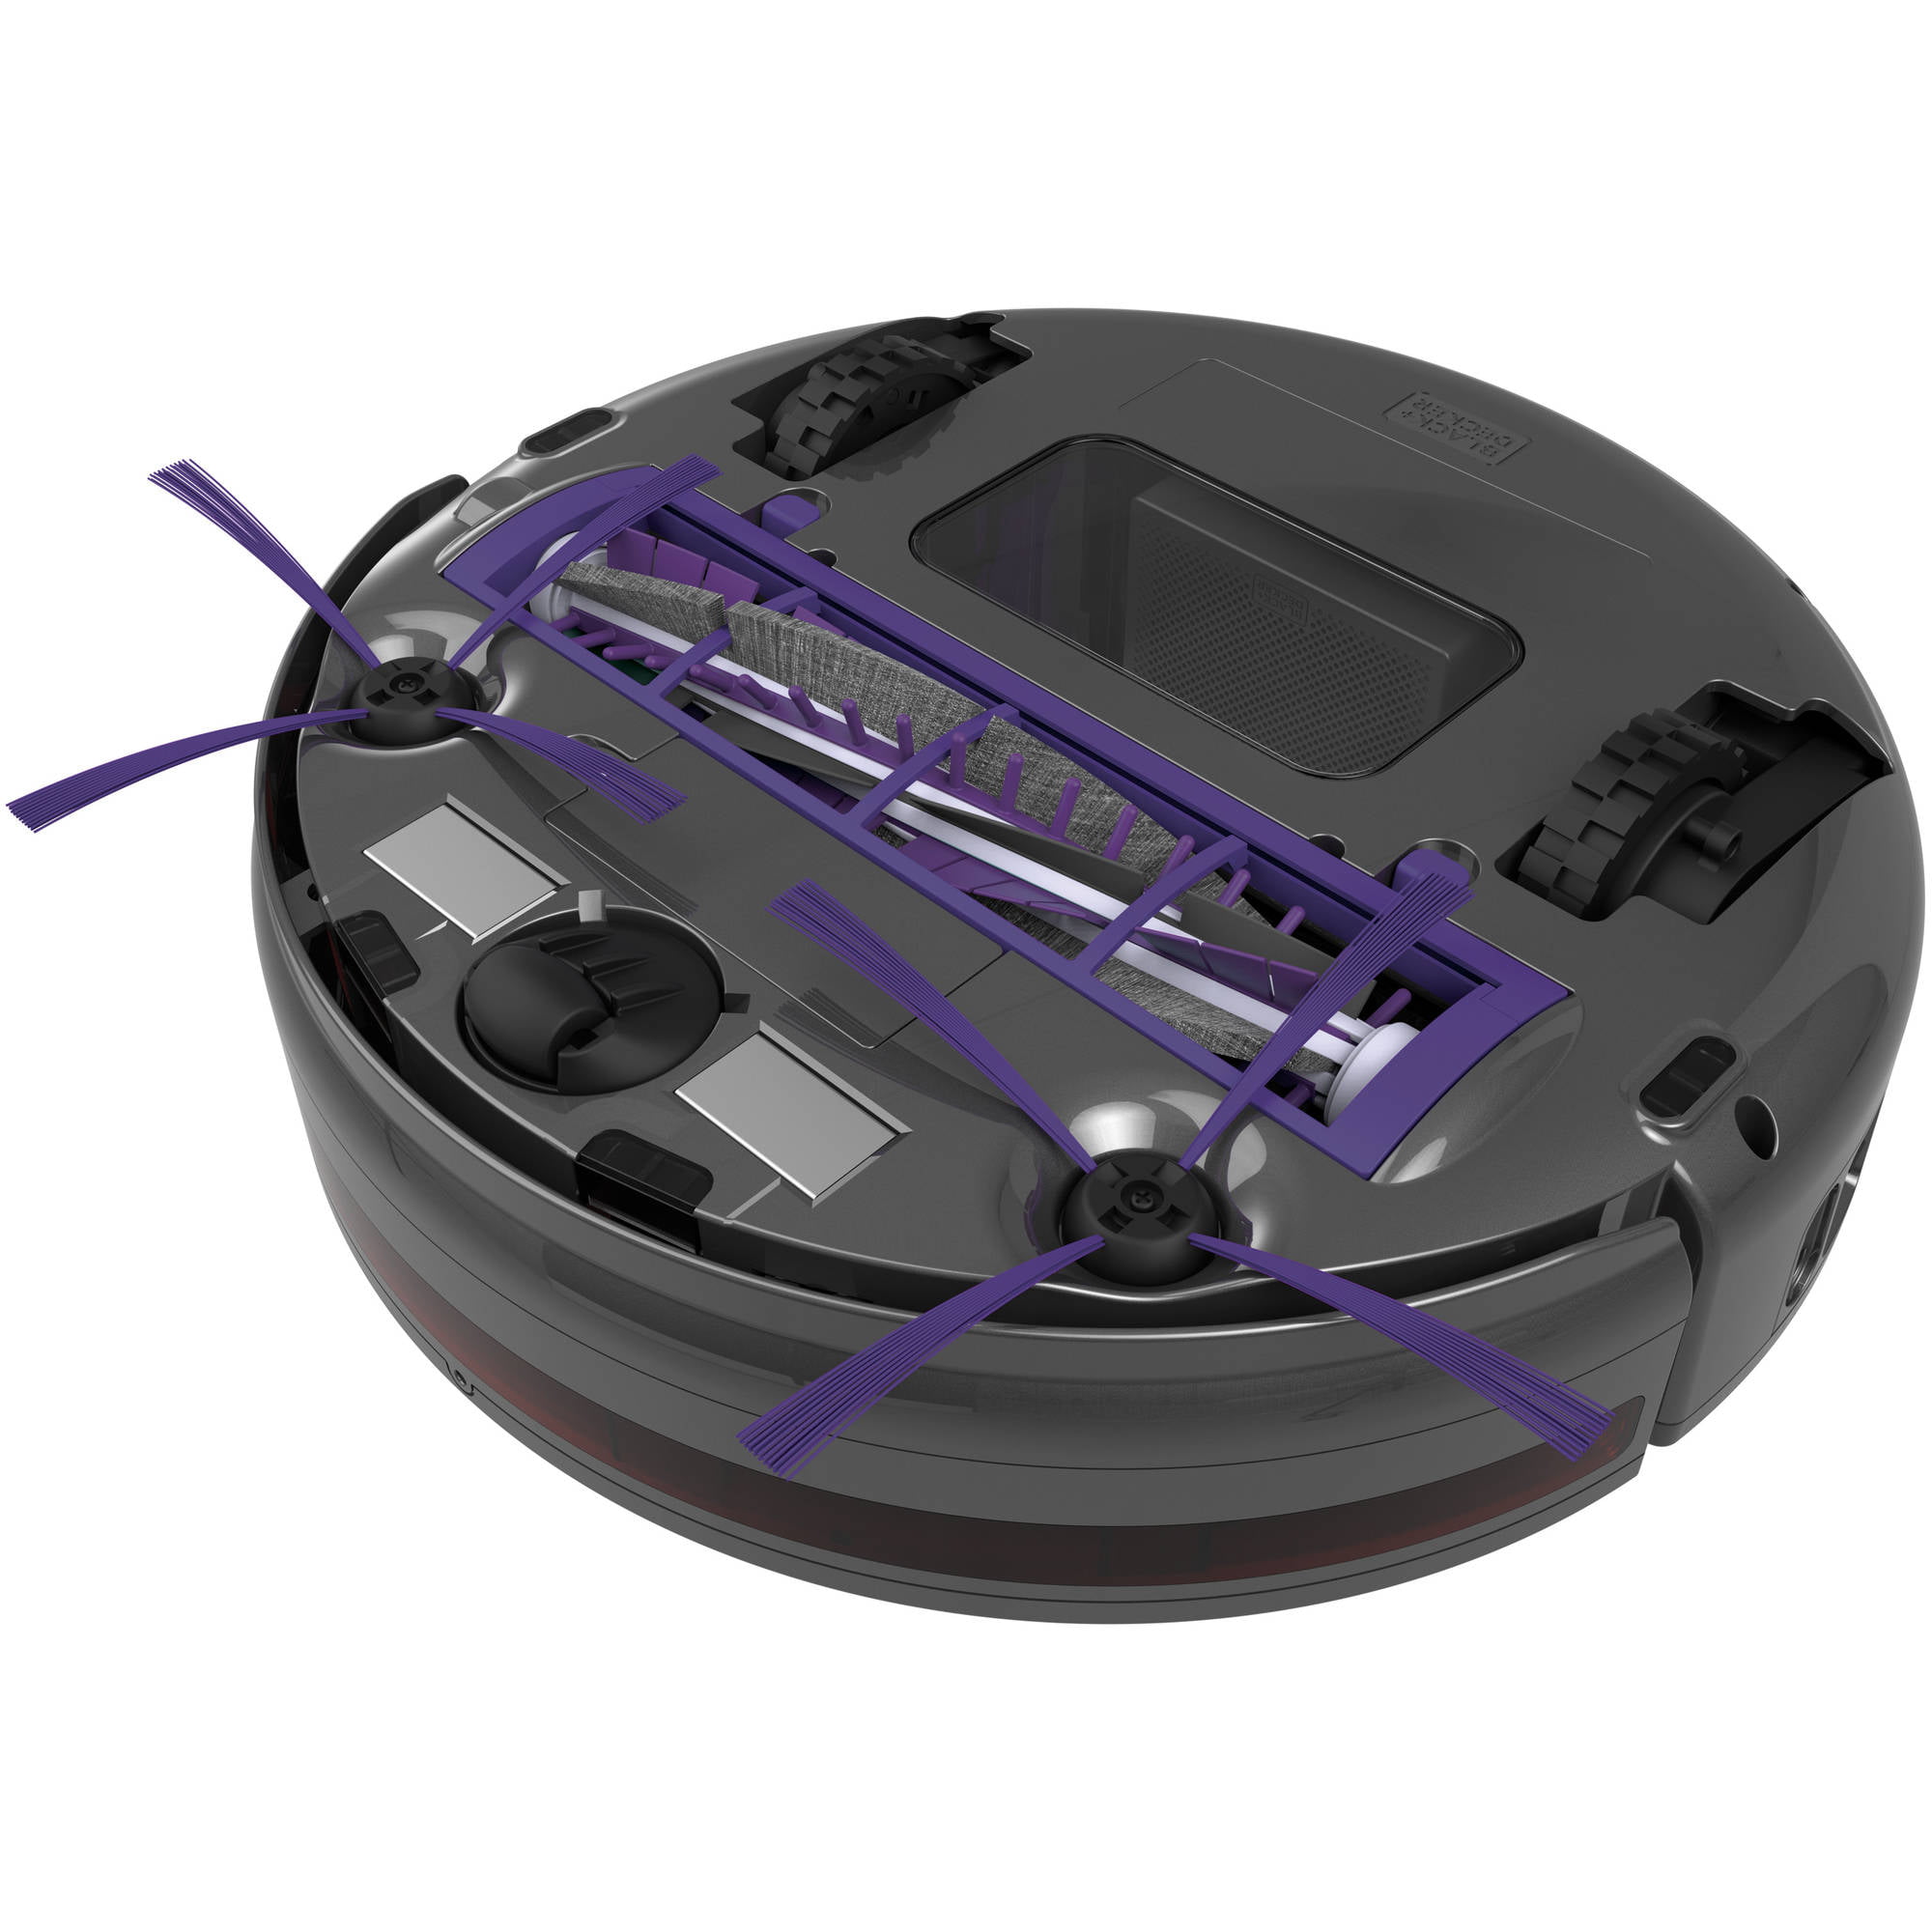 BLACK+DECKER Smartech Pet LED Robotic Vac, HRV425BLP